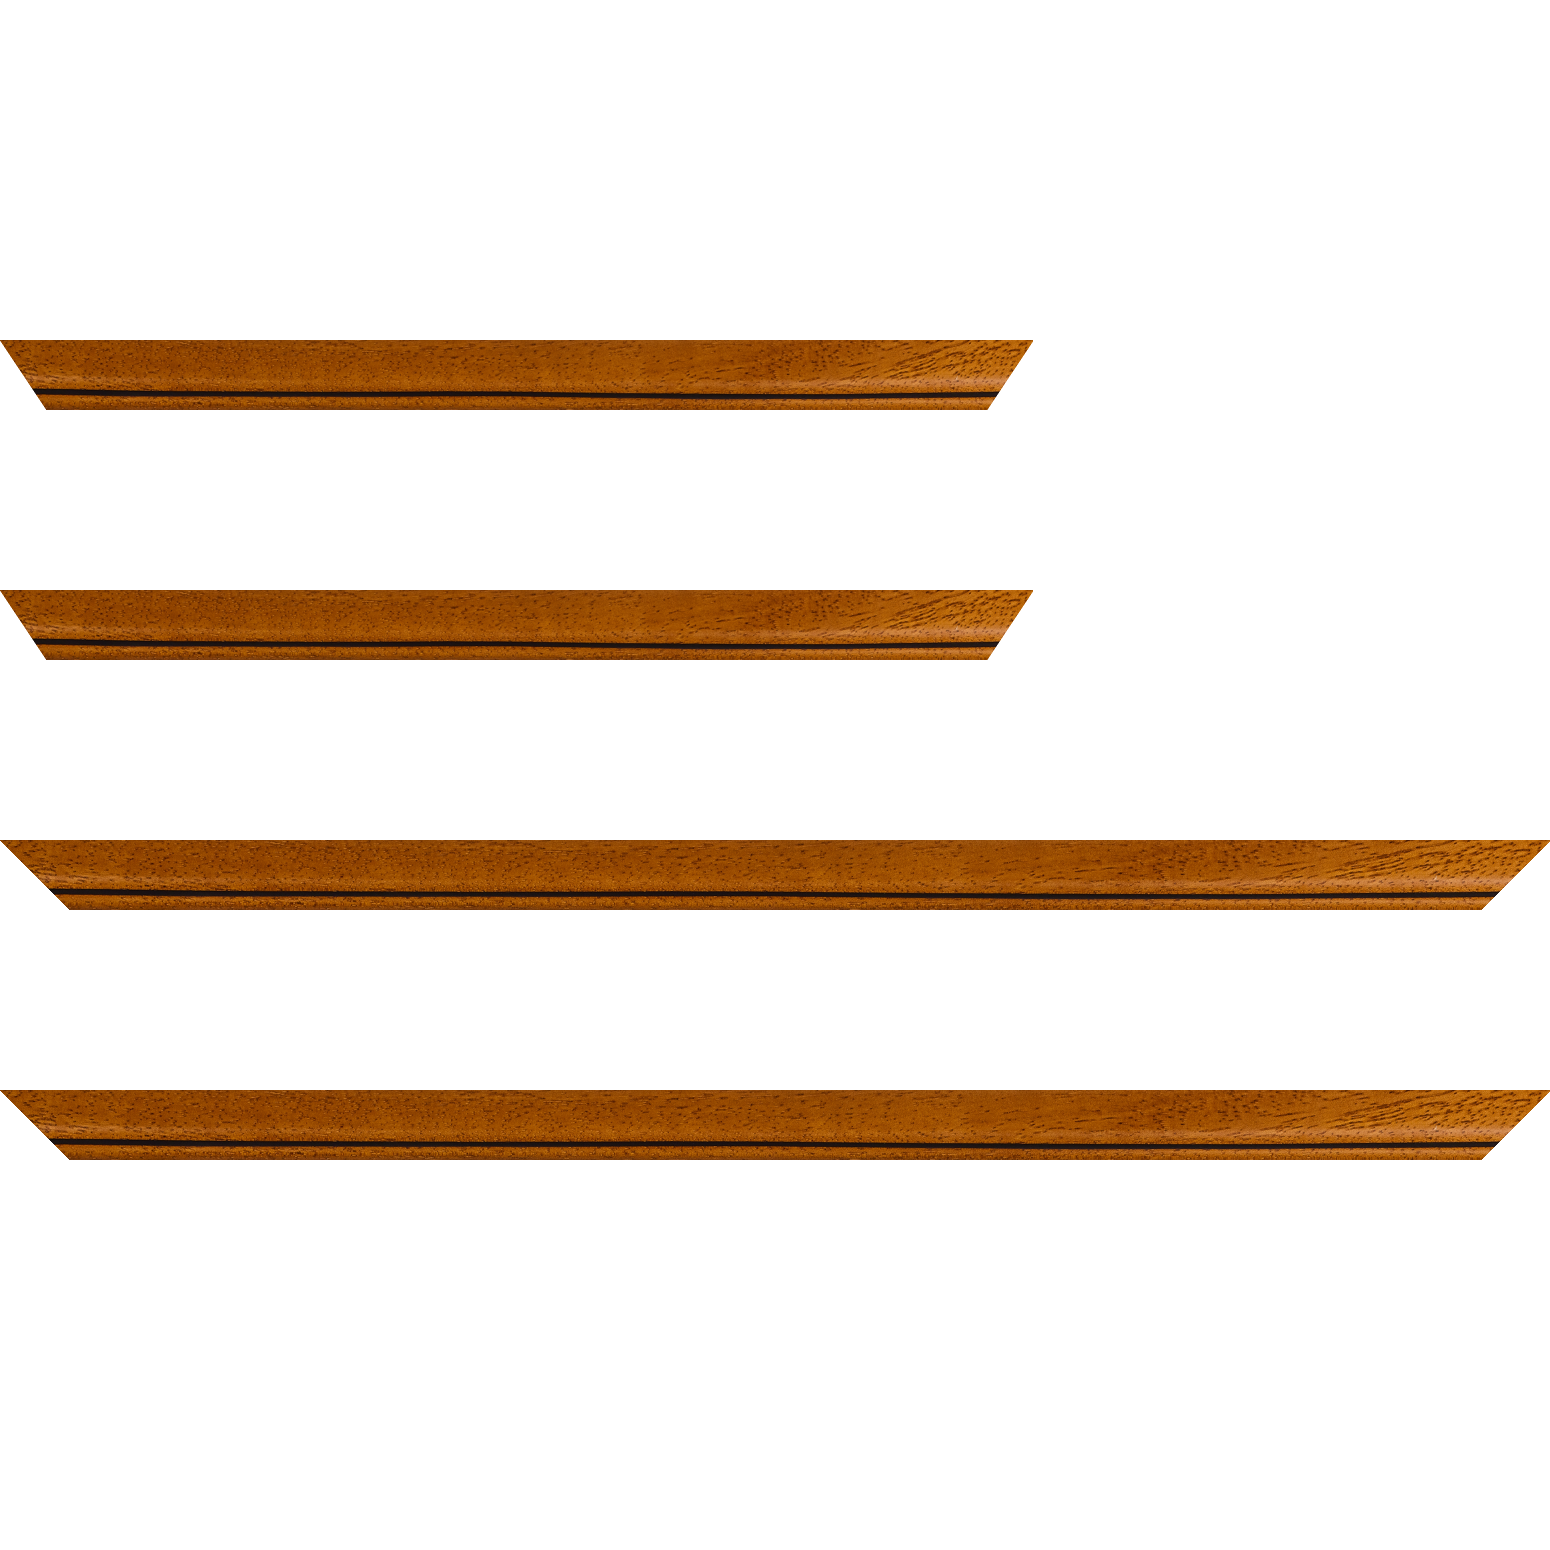 Baguette bois profil bombé largeur 2.4cm couleur marron ton bois satiné filet noir - 35x24